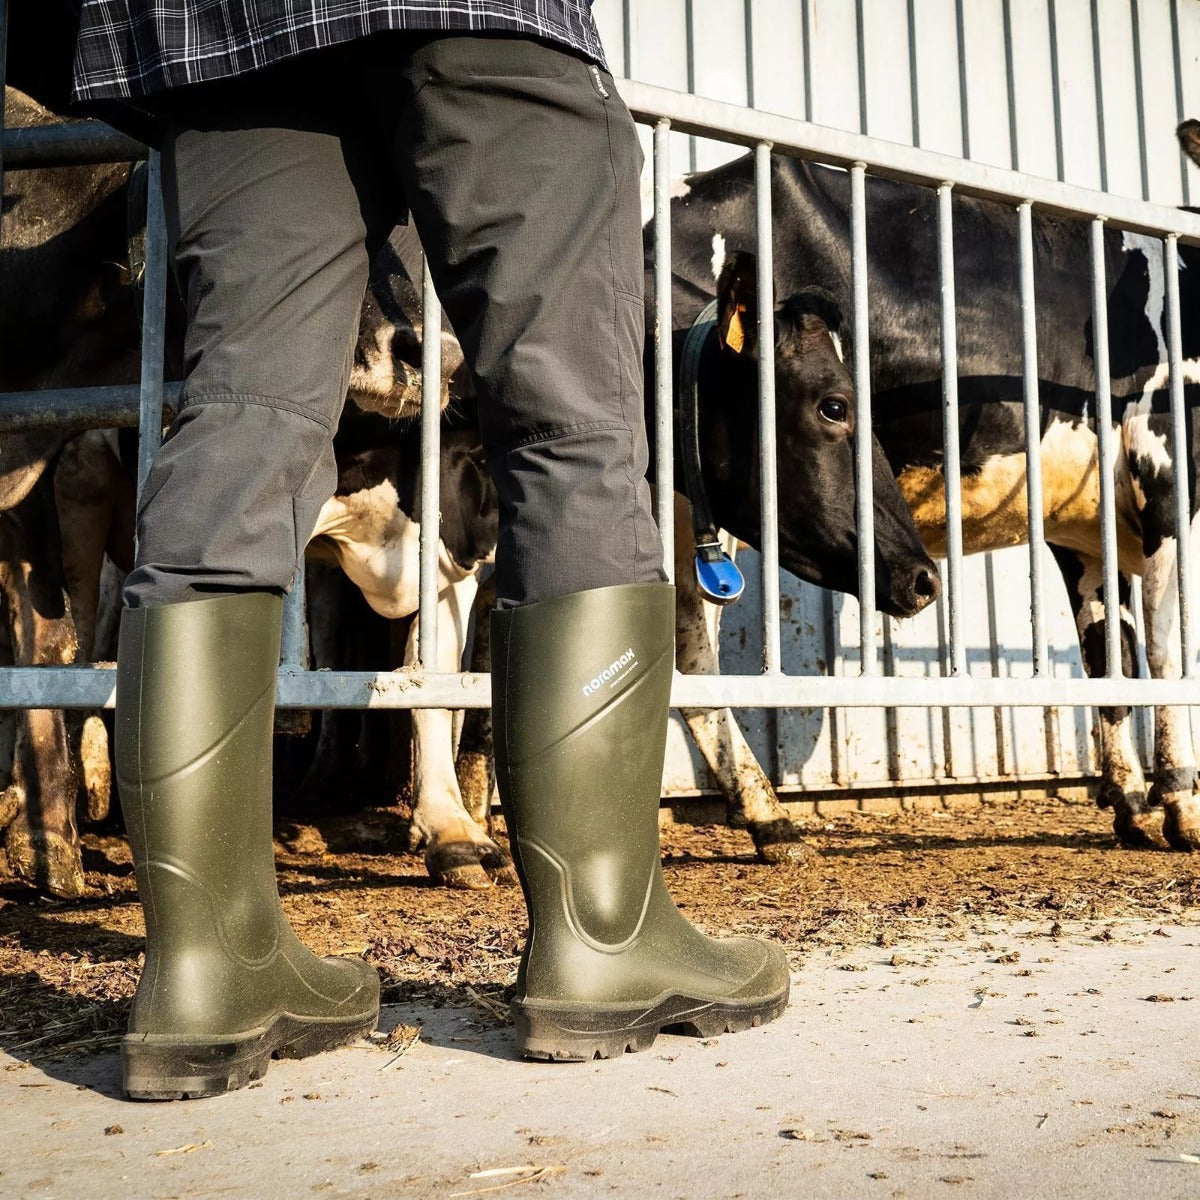 Noramax S5 Sicherheitsstiefel – Grün Stiefel für Landwirtschaft Ünd Viehzucht